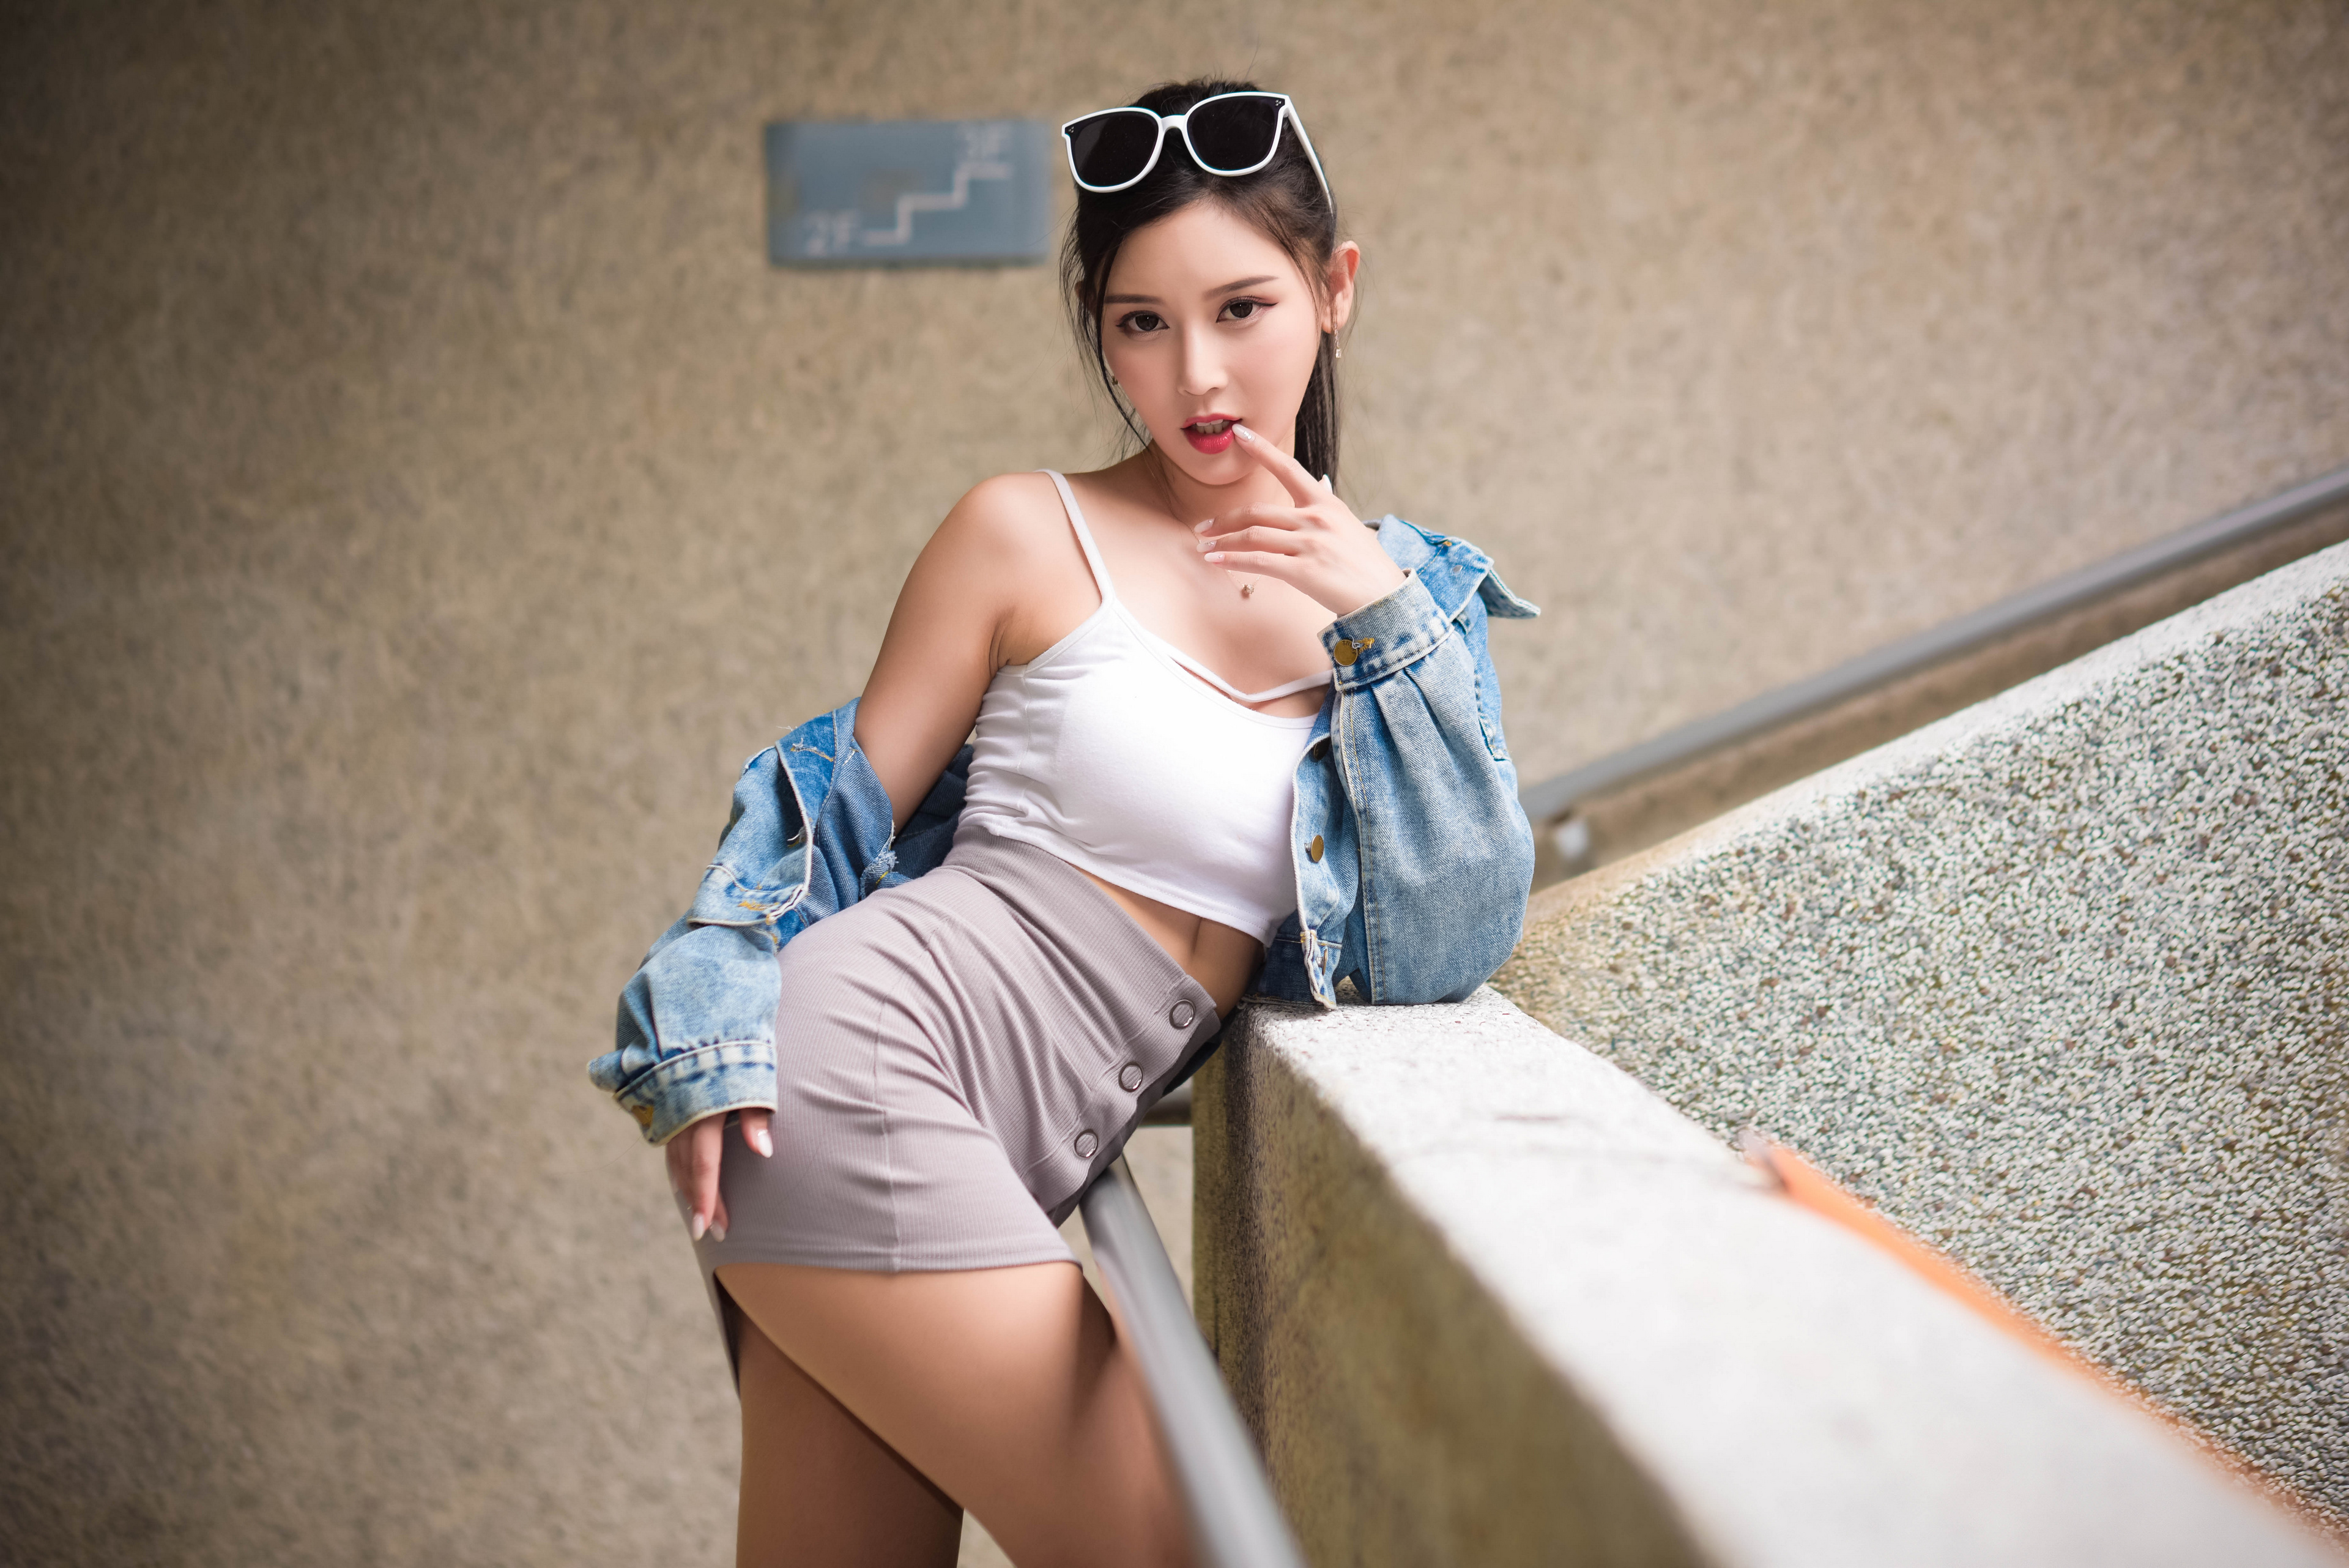 Asian Model Women Long Hair Dark Hair Sunglasses Ponytail Jeans Jacket White Tops Grey Skirt Leaning 3840x2563